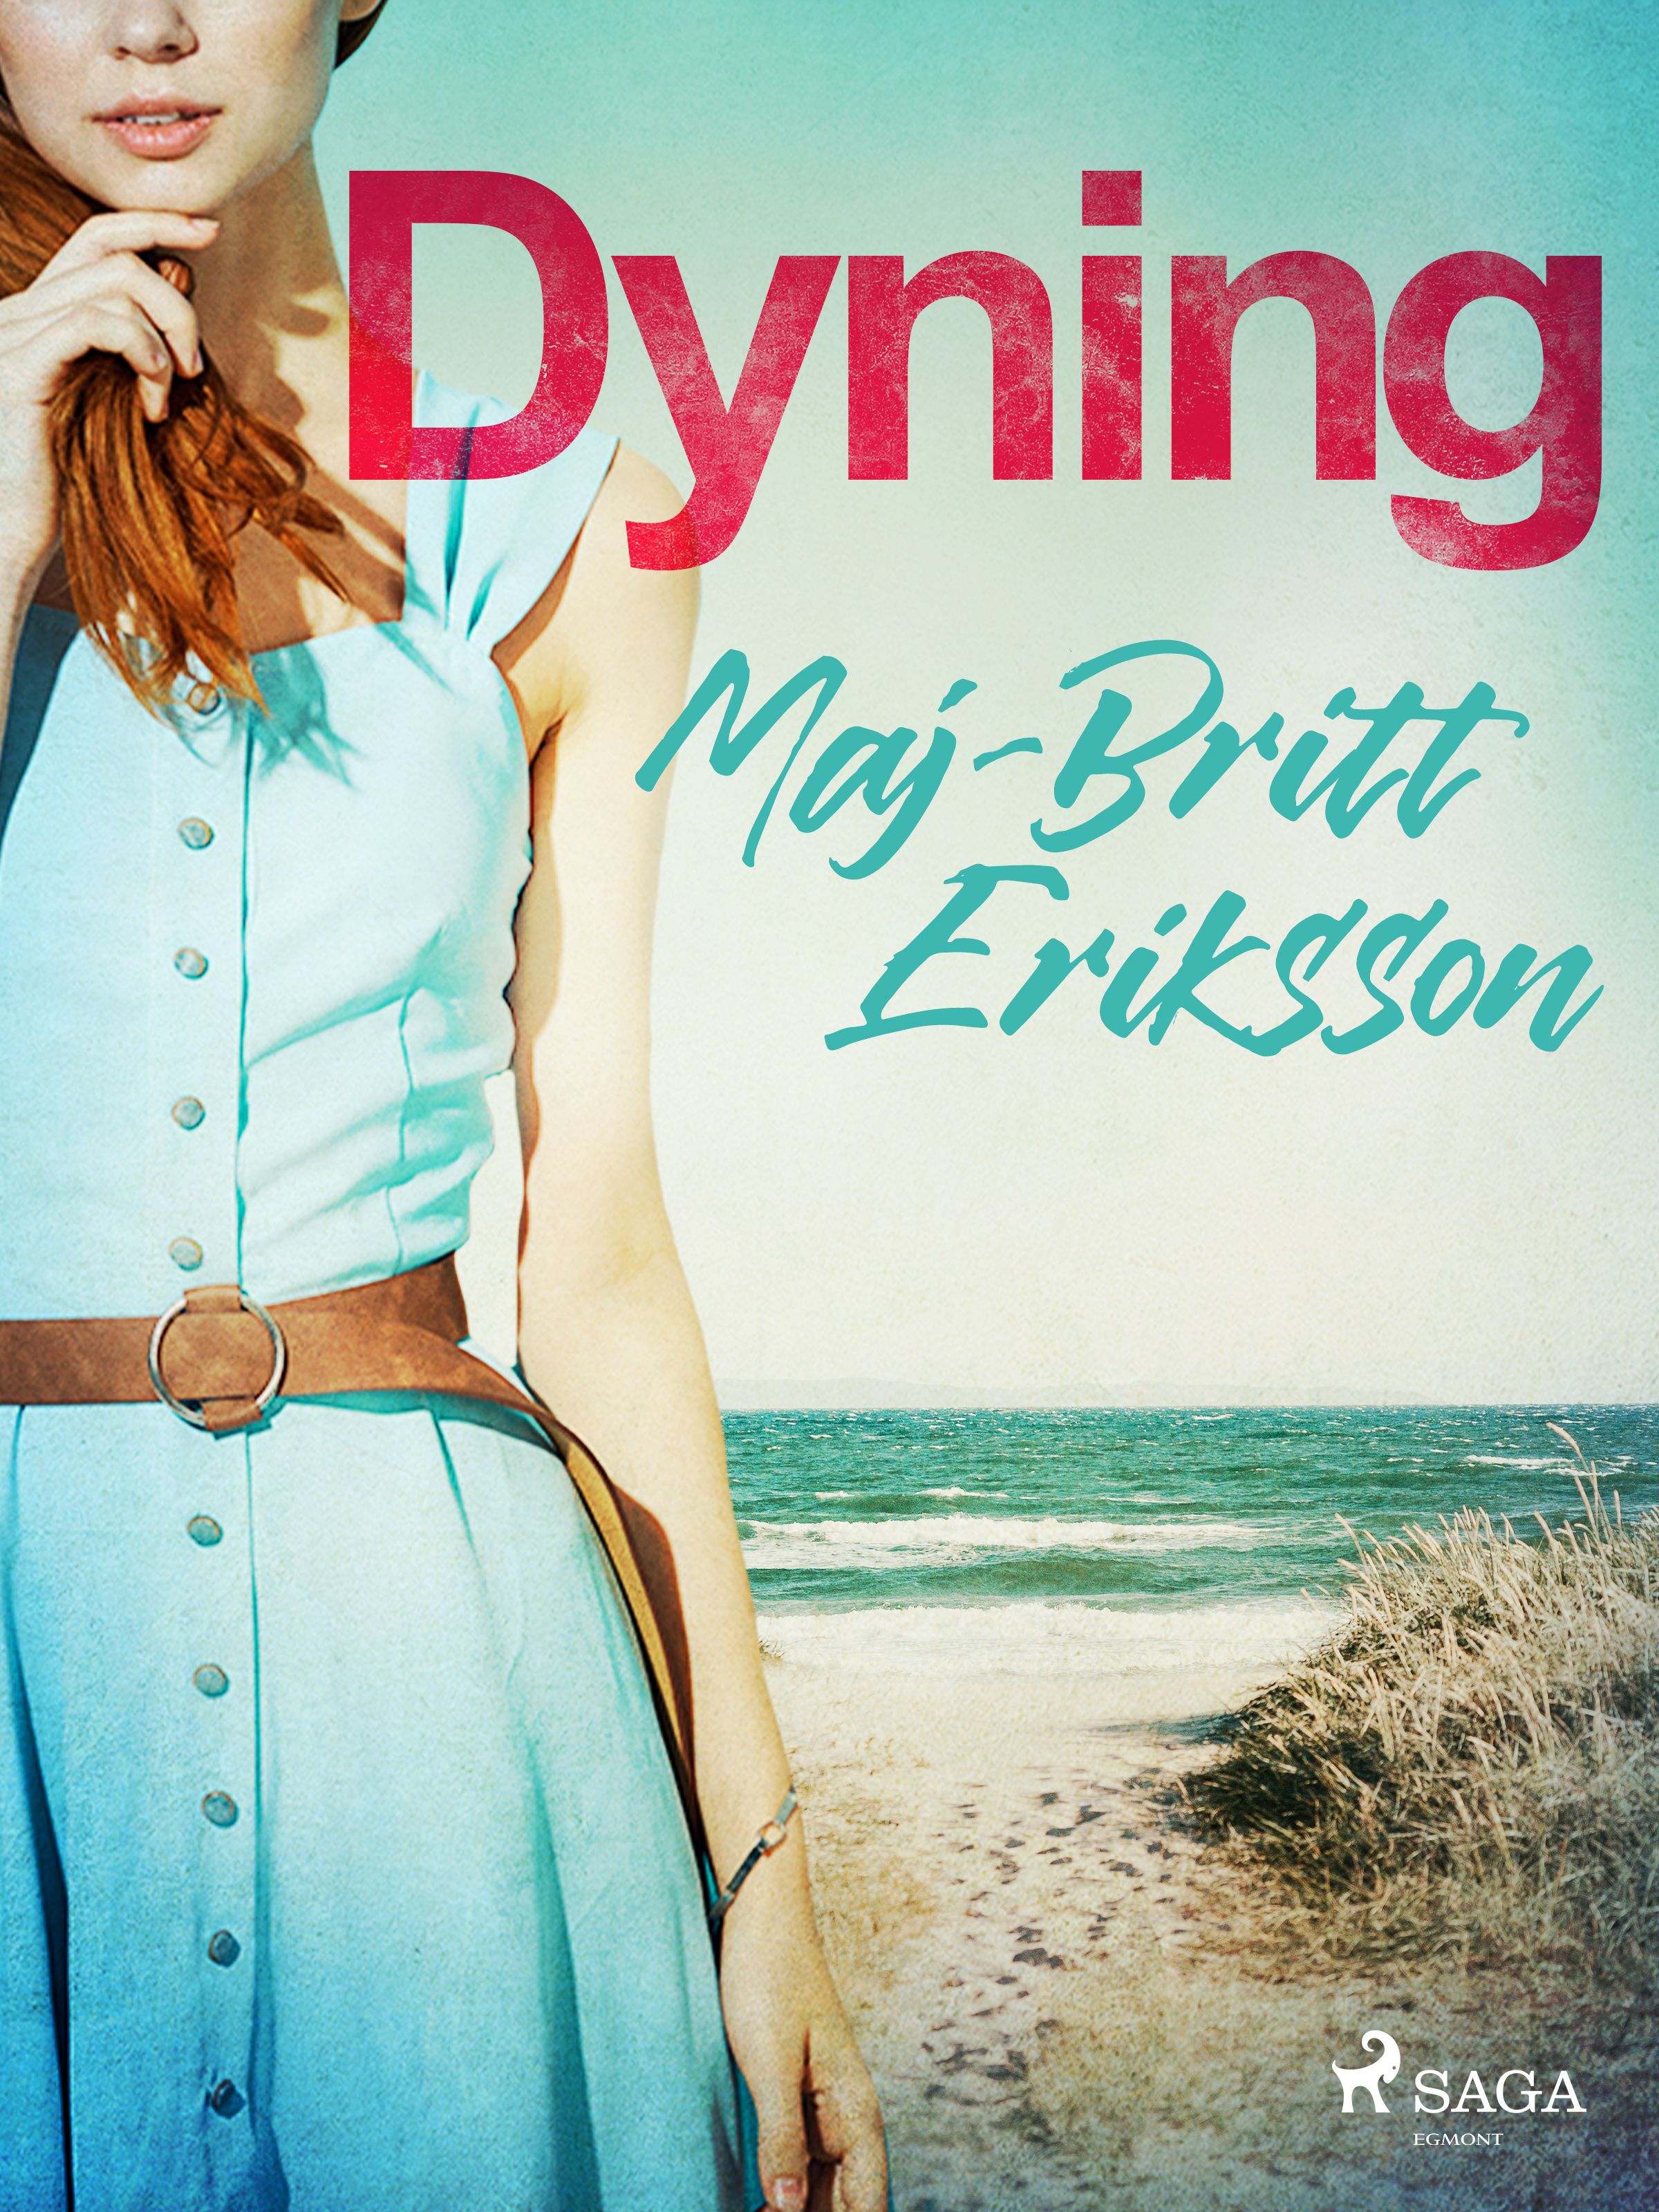 Dyning, e-bok av Maj-Britt Eriksson